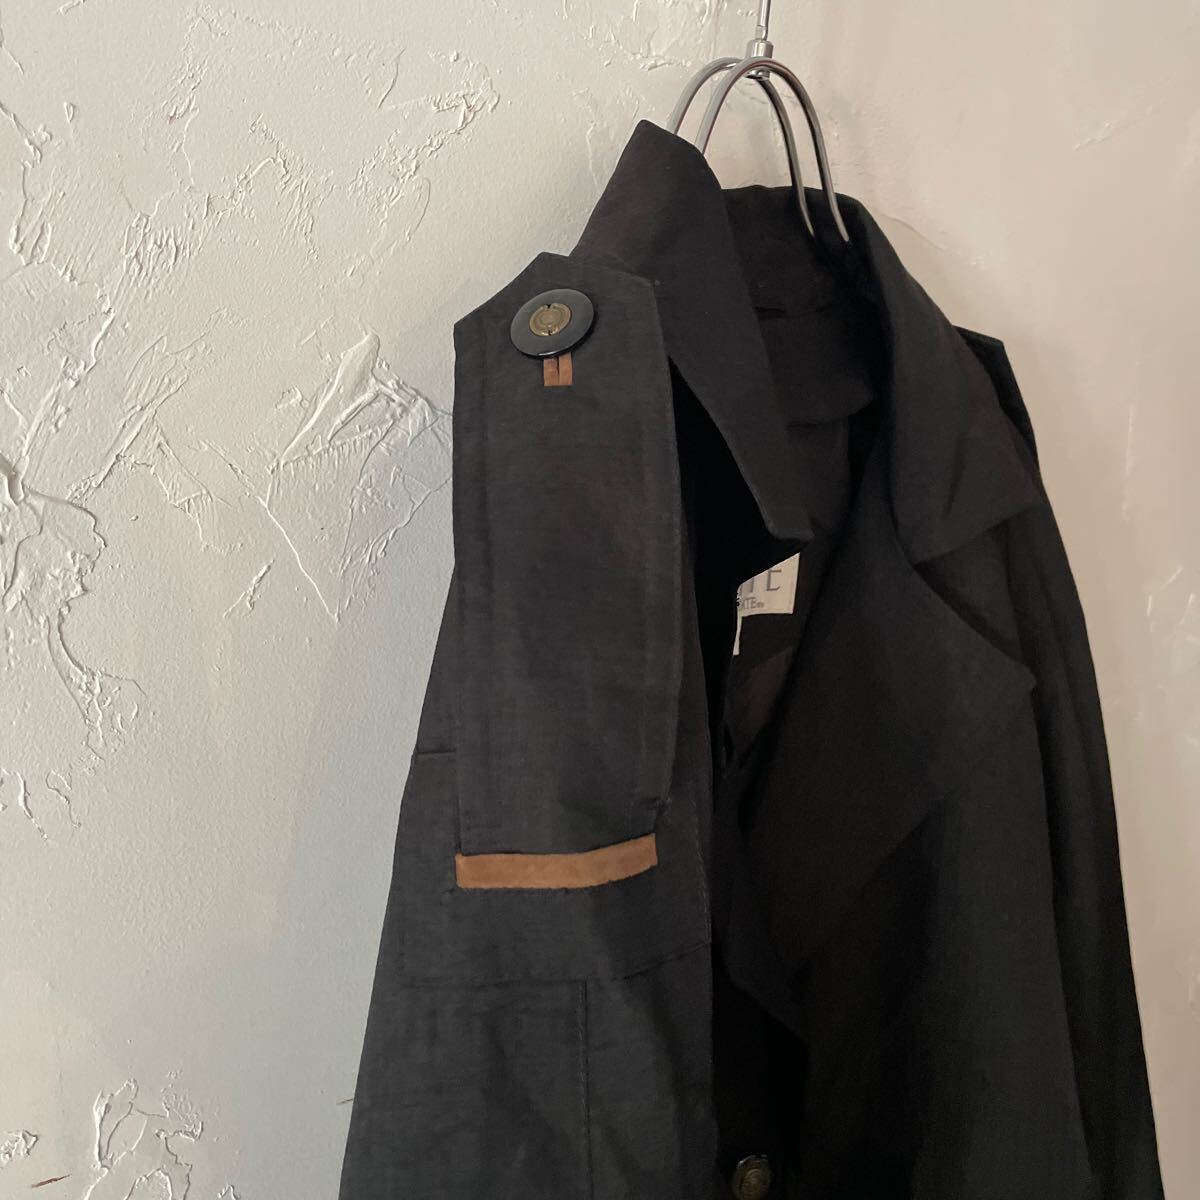  Vintage la gran пальто с отложным воротником 4 Vintage тренчкот черный чёрный б/у одежда одноцветный женский мужской длинное пальто полиэстер 